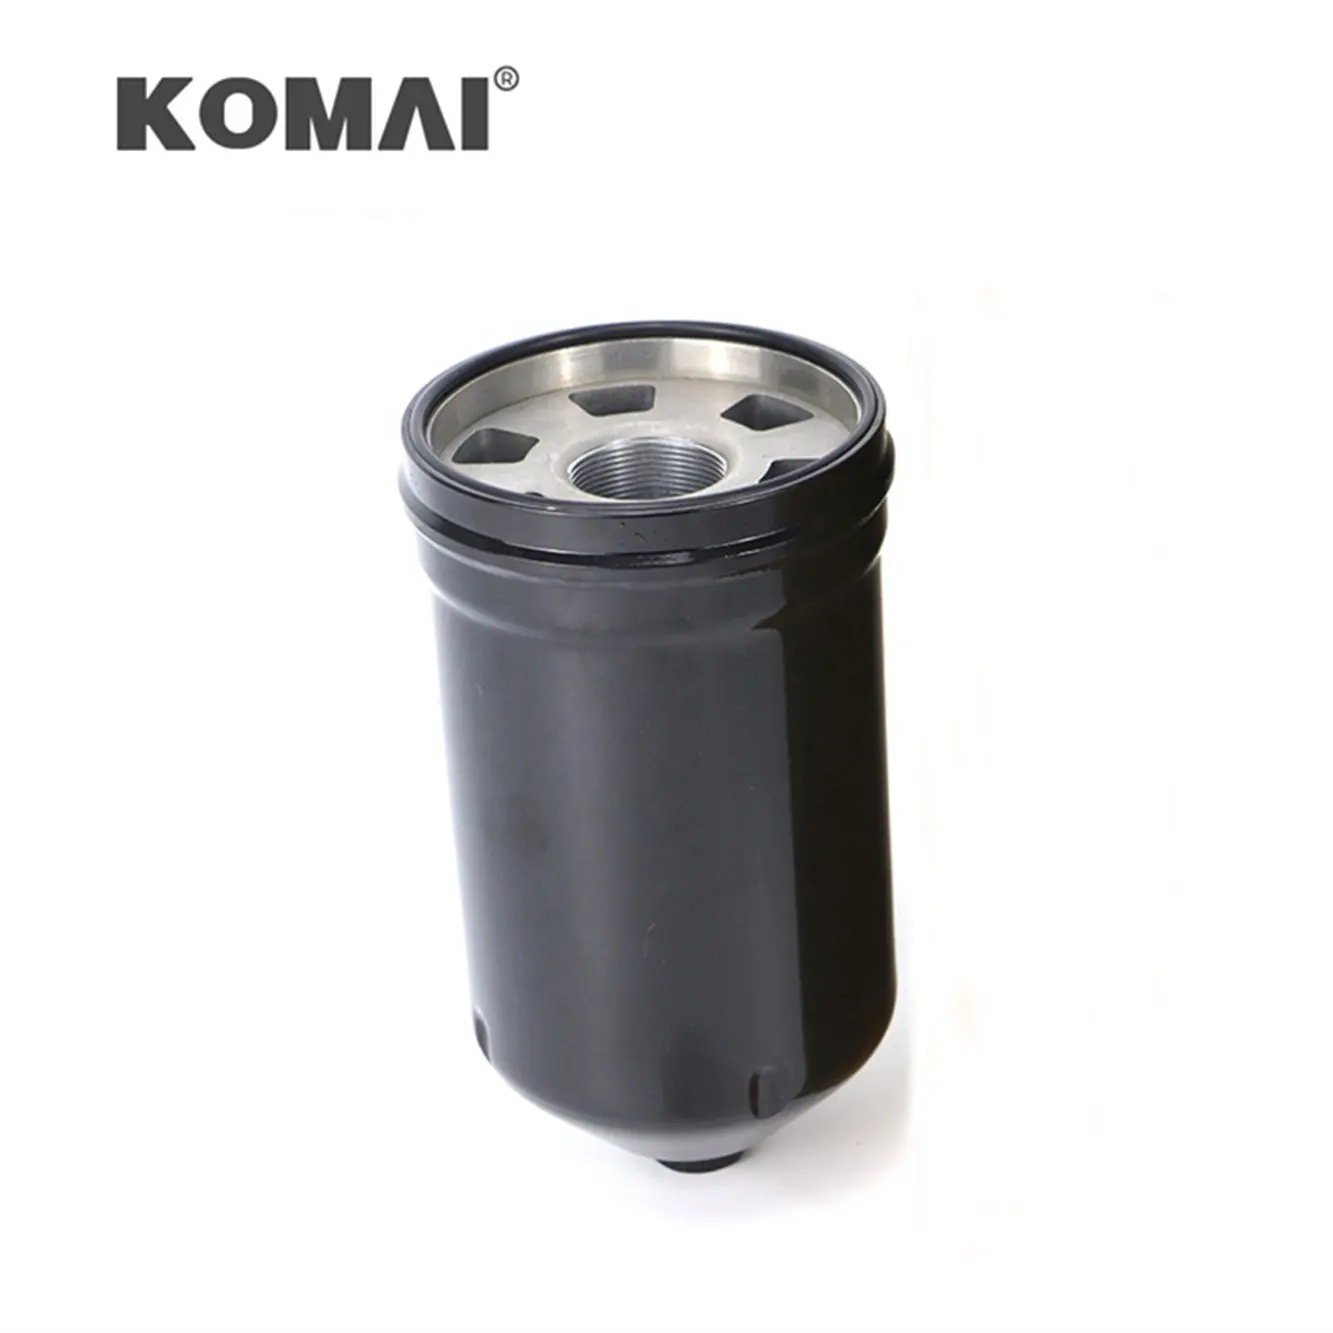 Filter Hidrolik, Filter Hidrolik Cocok untuk Komatsu D41E-6 SH60212 23S-49-13120 SPH94047